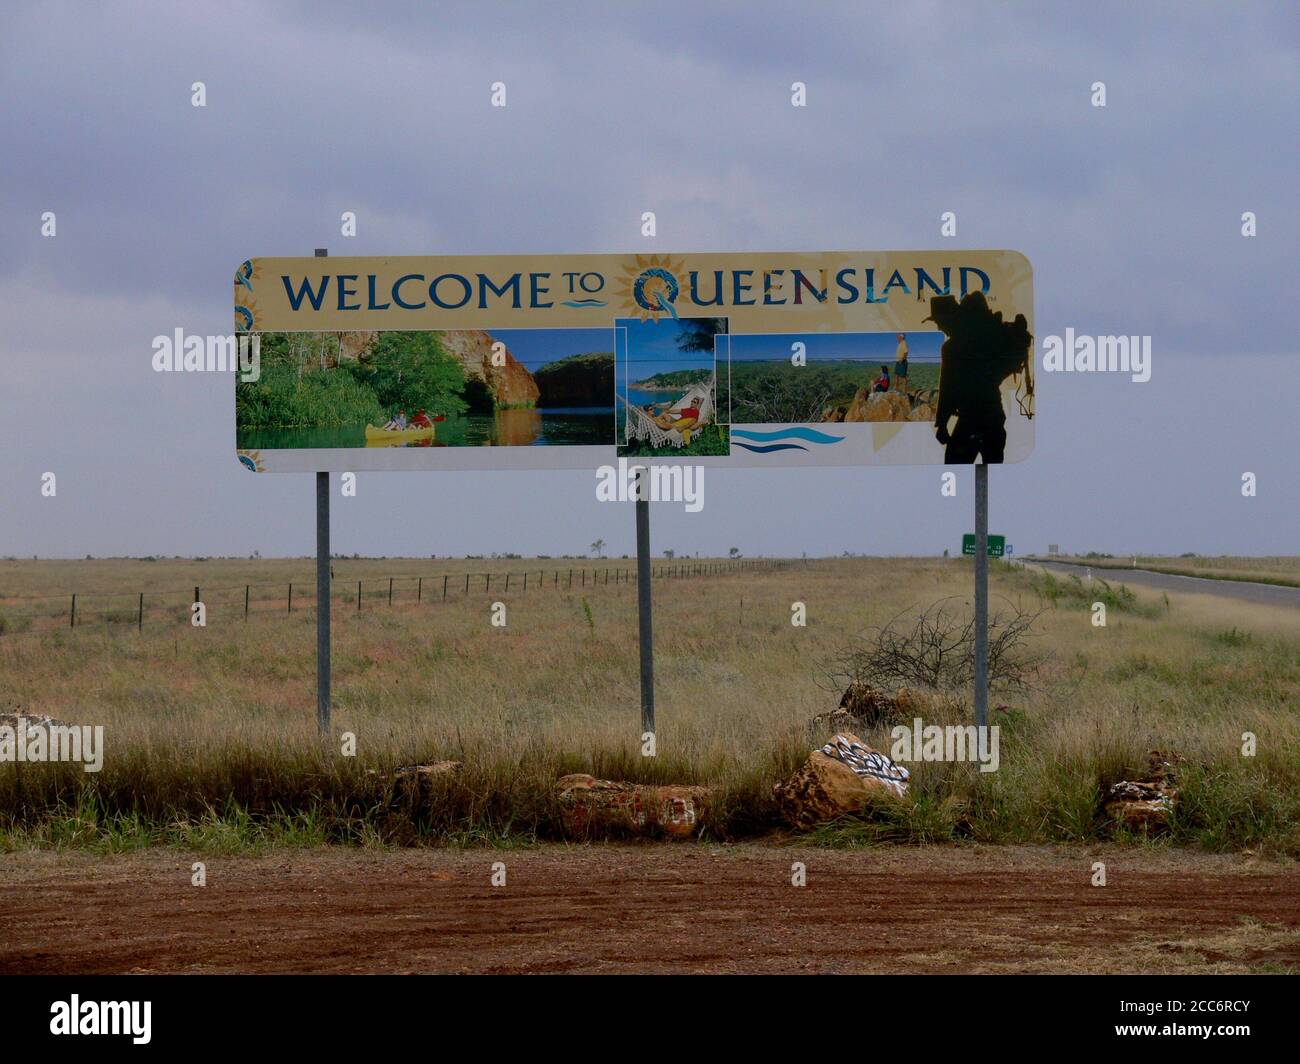 AUSTRALIE, BARKLY HIGHWAY, FRONTIÈRE TERRITOIRE DU NORD / QUEENSLAND, 17 MAI 2010 : panneau de bienvenue dans le Queensland Banque D'Images